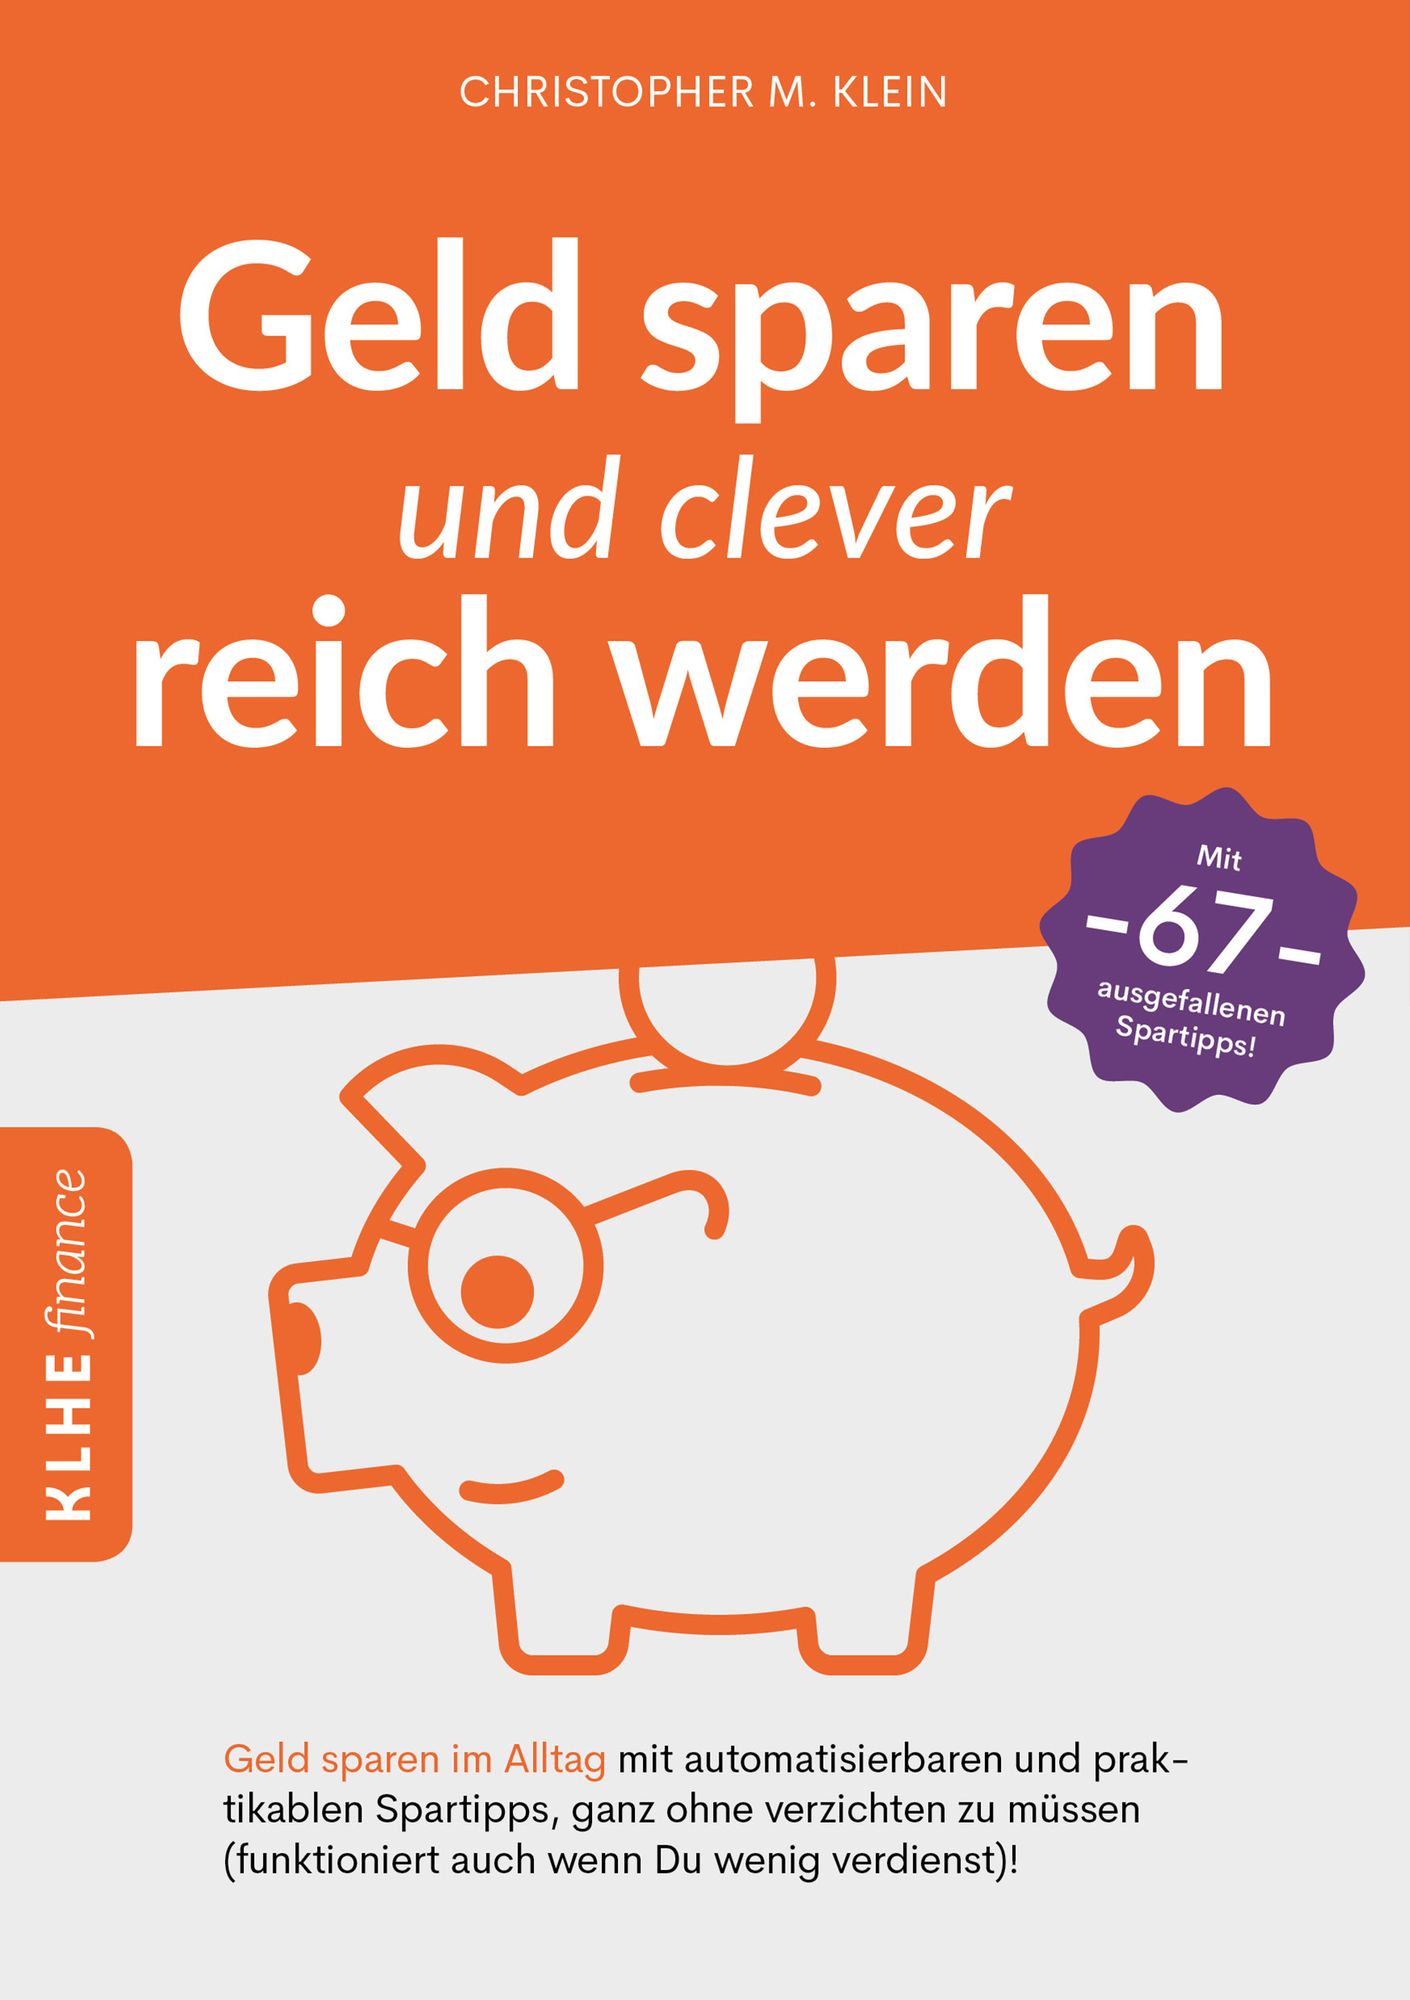 Ungewöhnliche Tipps, um im Alltag Geld zu sparen - SZ.de